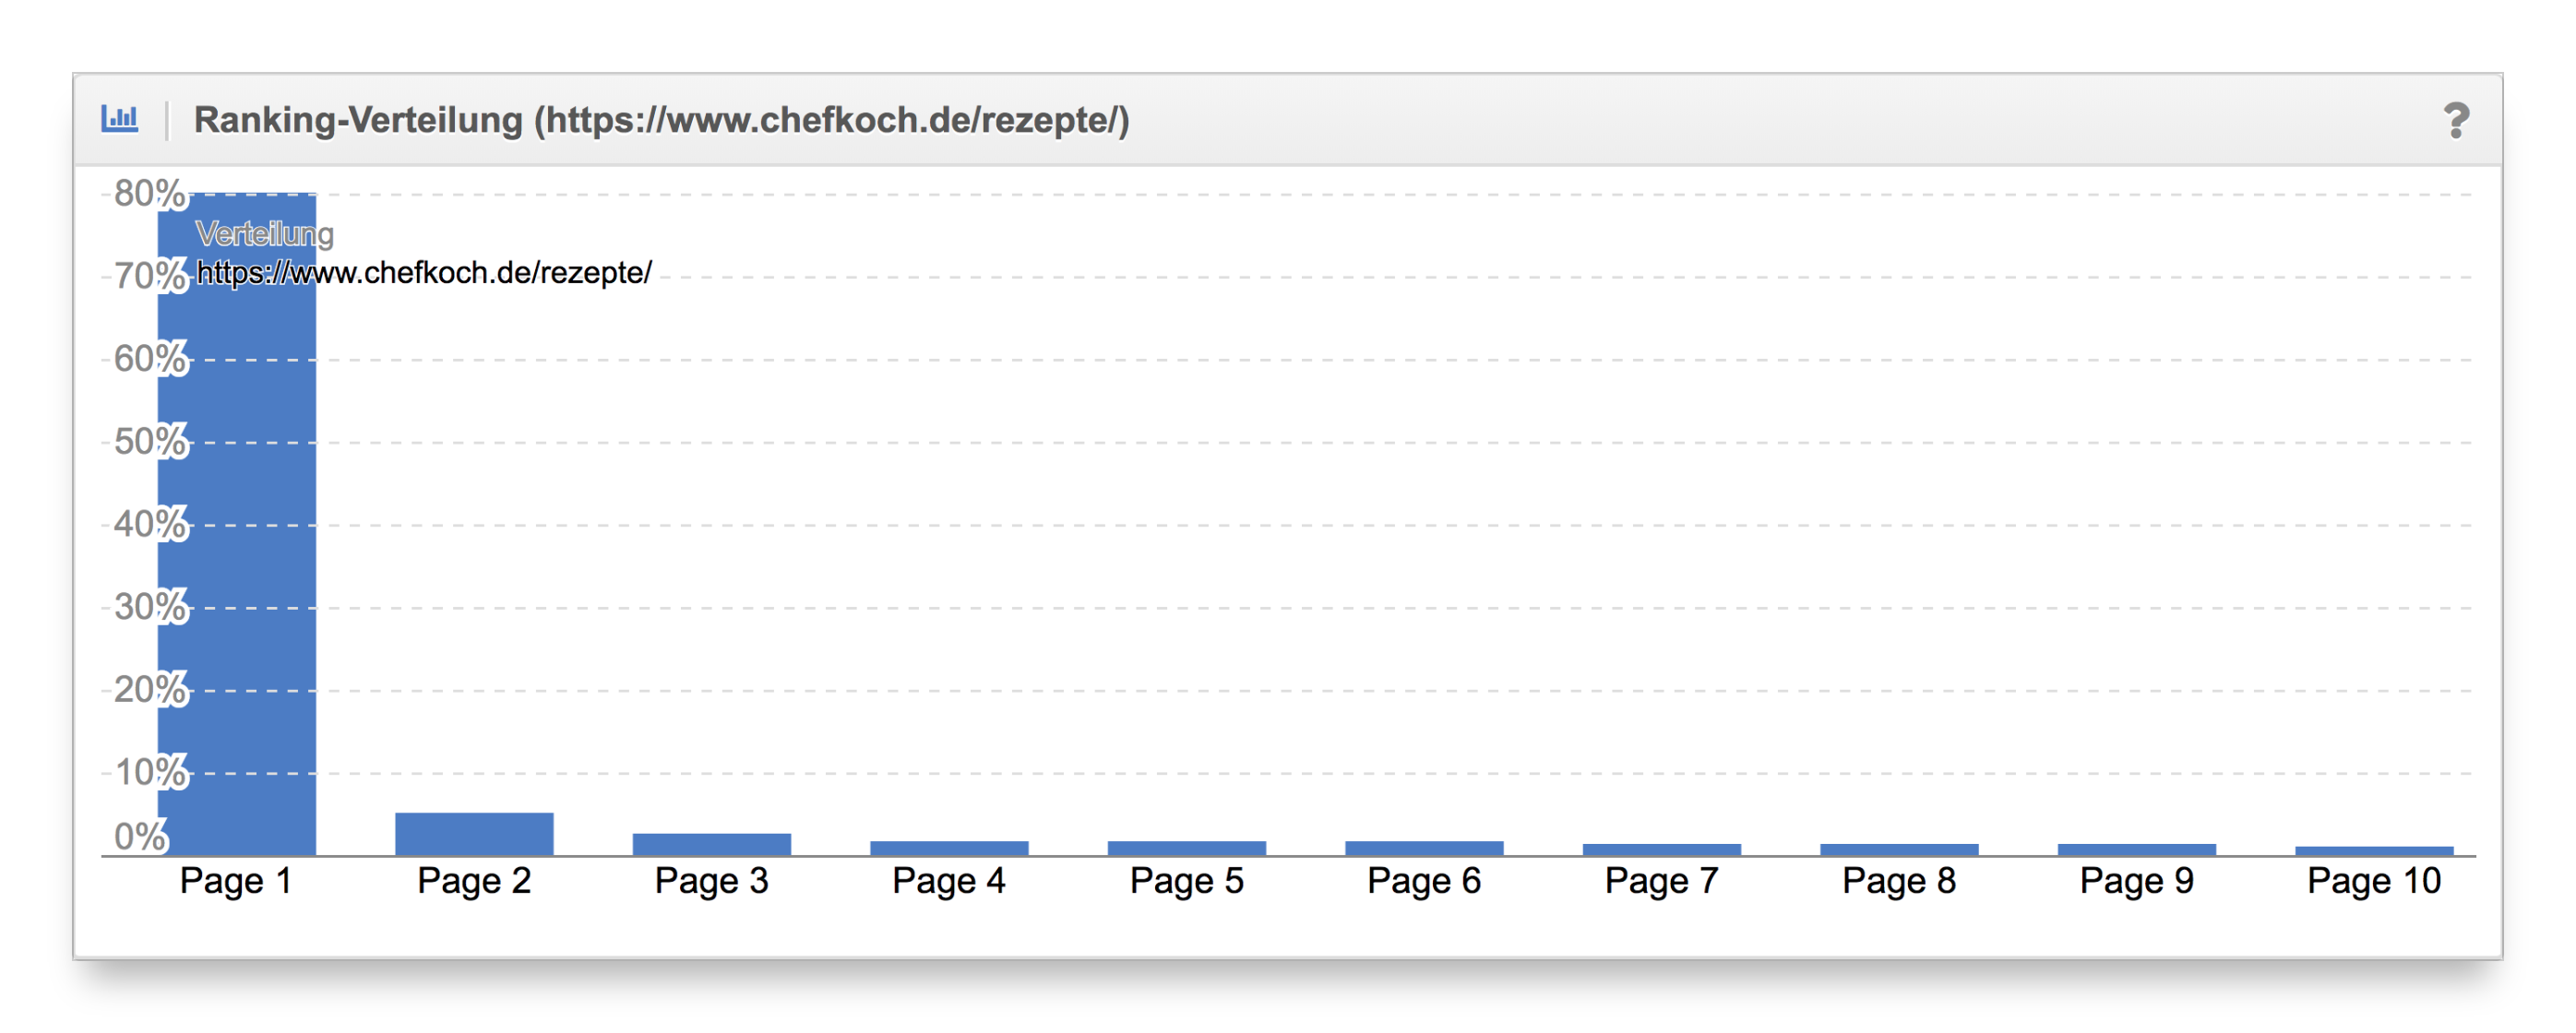 Vergleich Ranking-Verteilung Content-Formate chefkoch.de